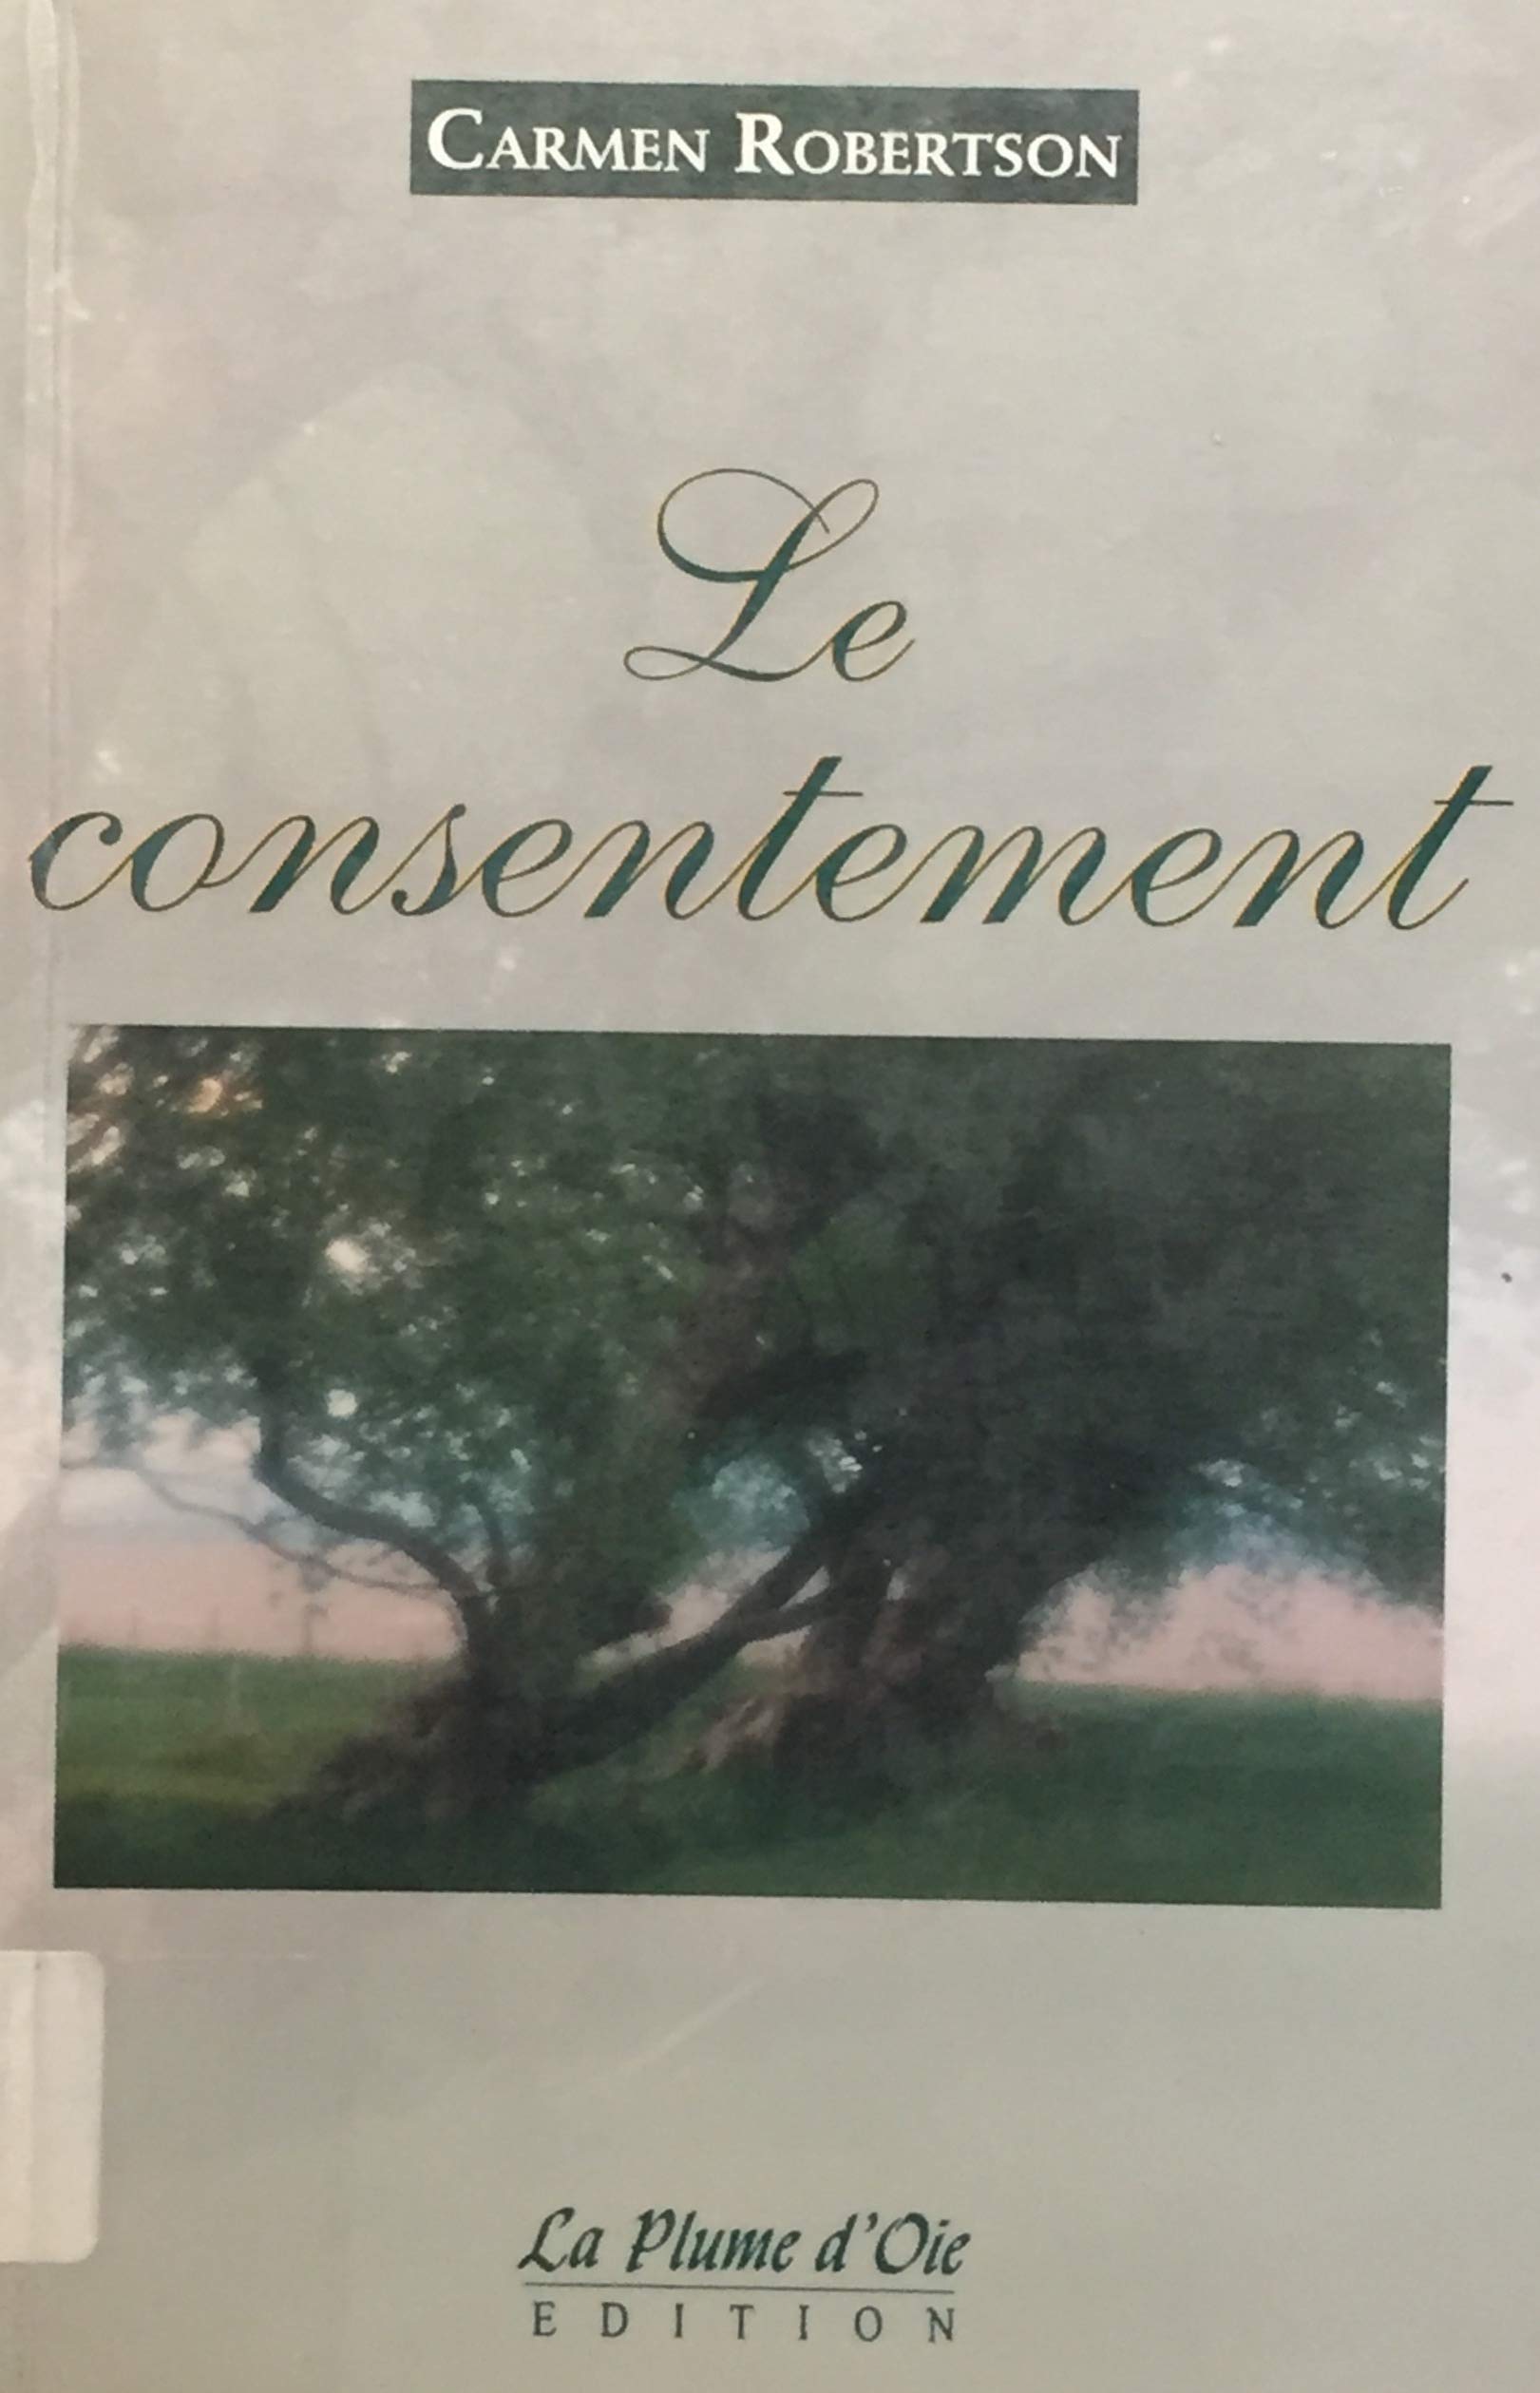 Livre ISBN 2922183882 Le consentement (Carmen Robertson)